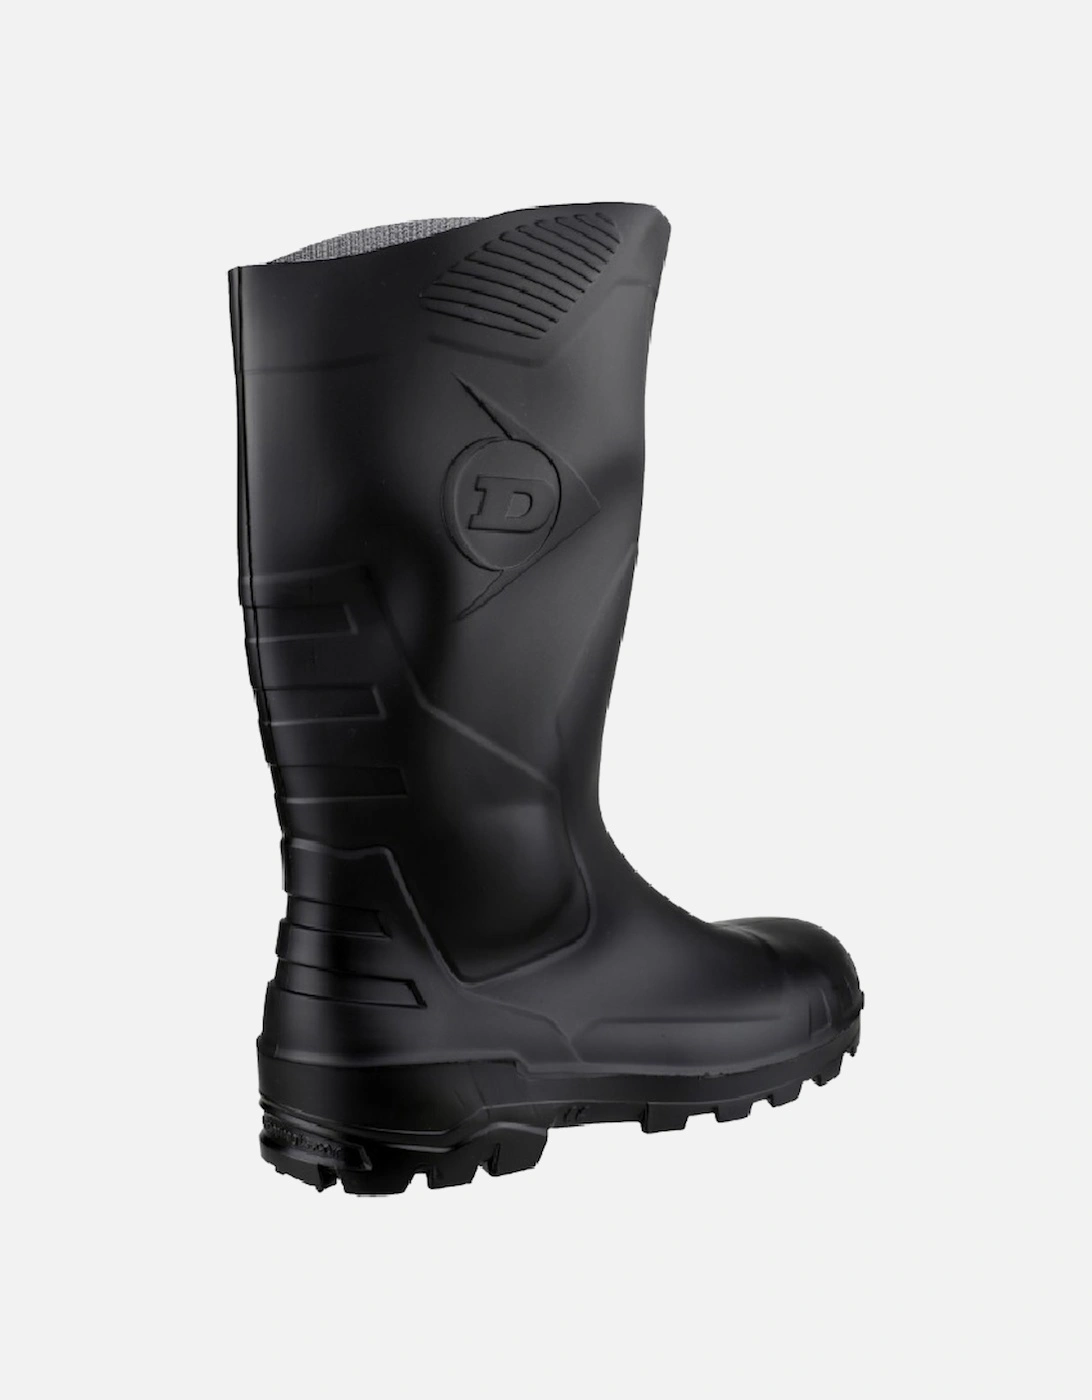 Devon Unisex Black Safety Wellington Boots